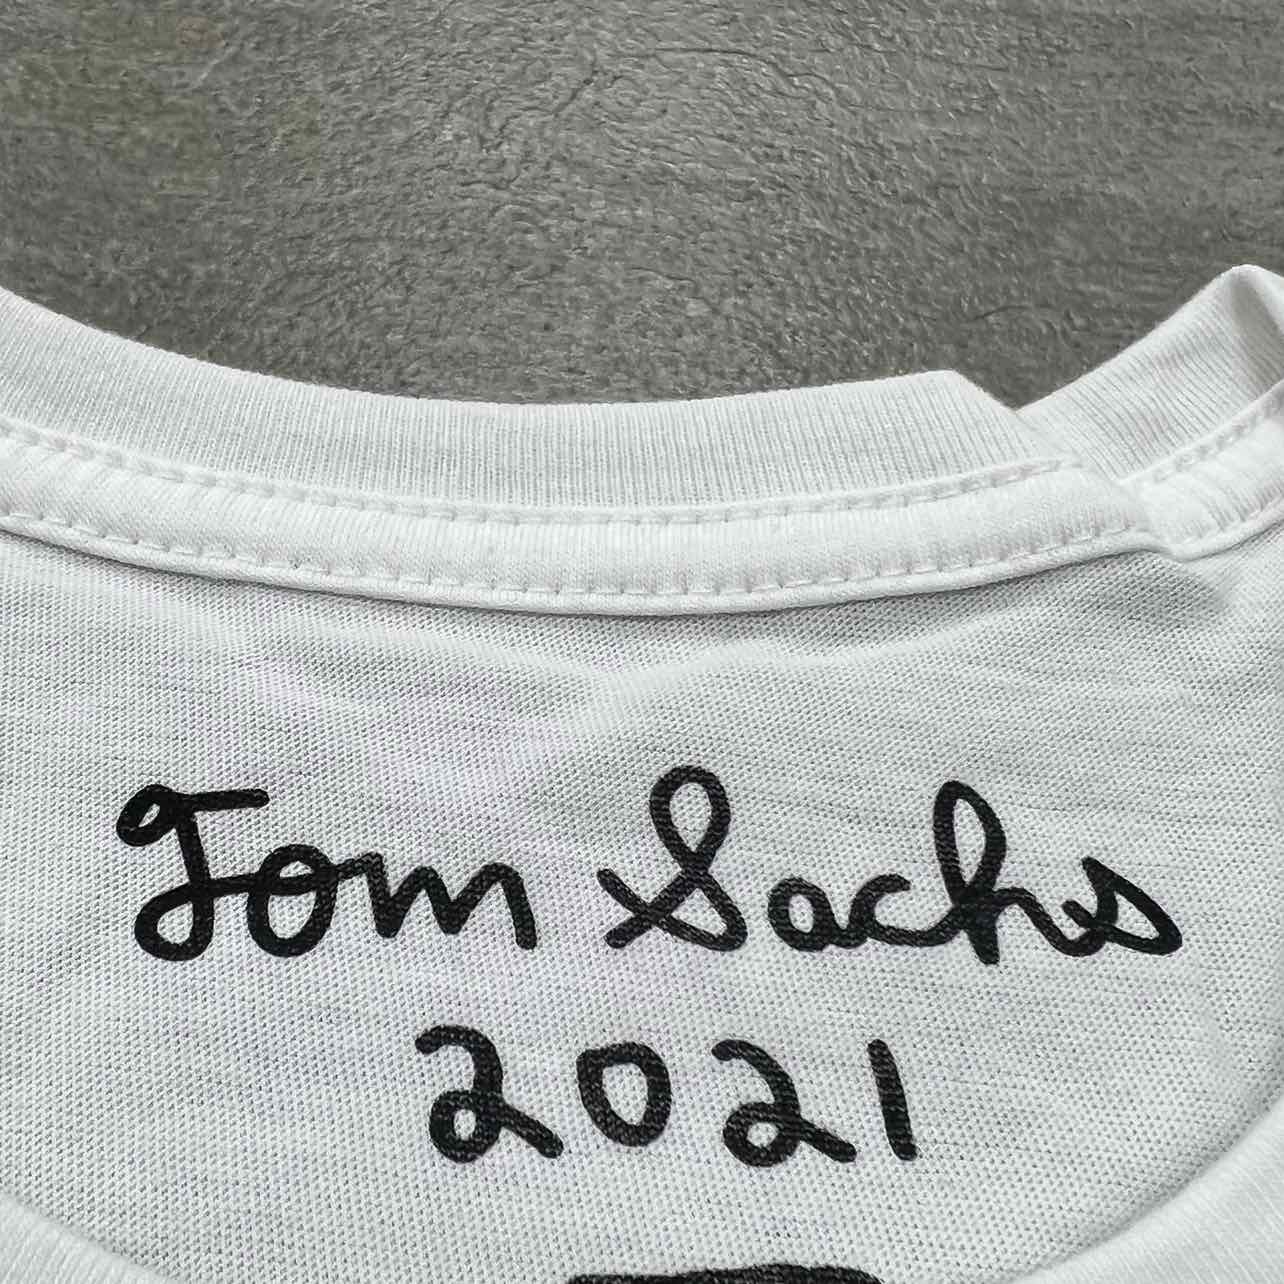 Tom Sachs T-Shirt "MCDONALD'S" White New Size S